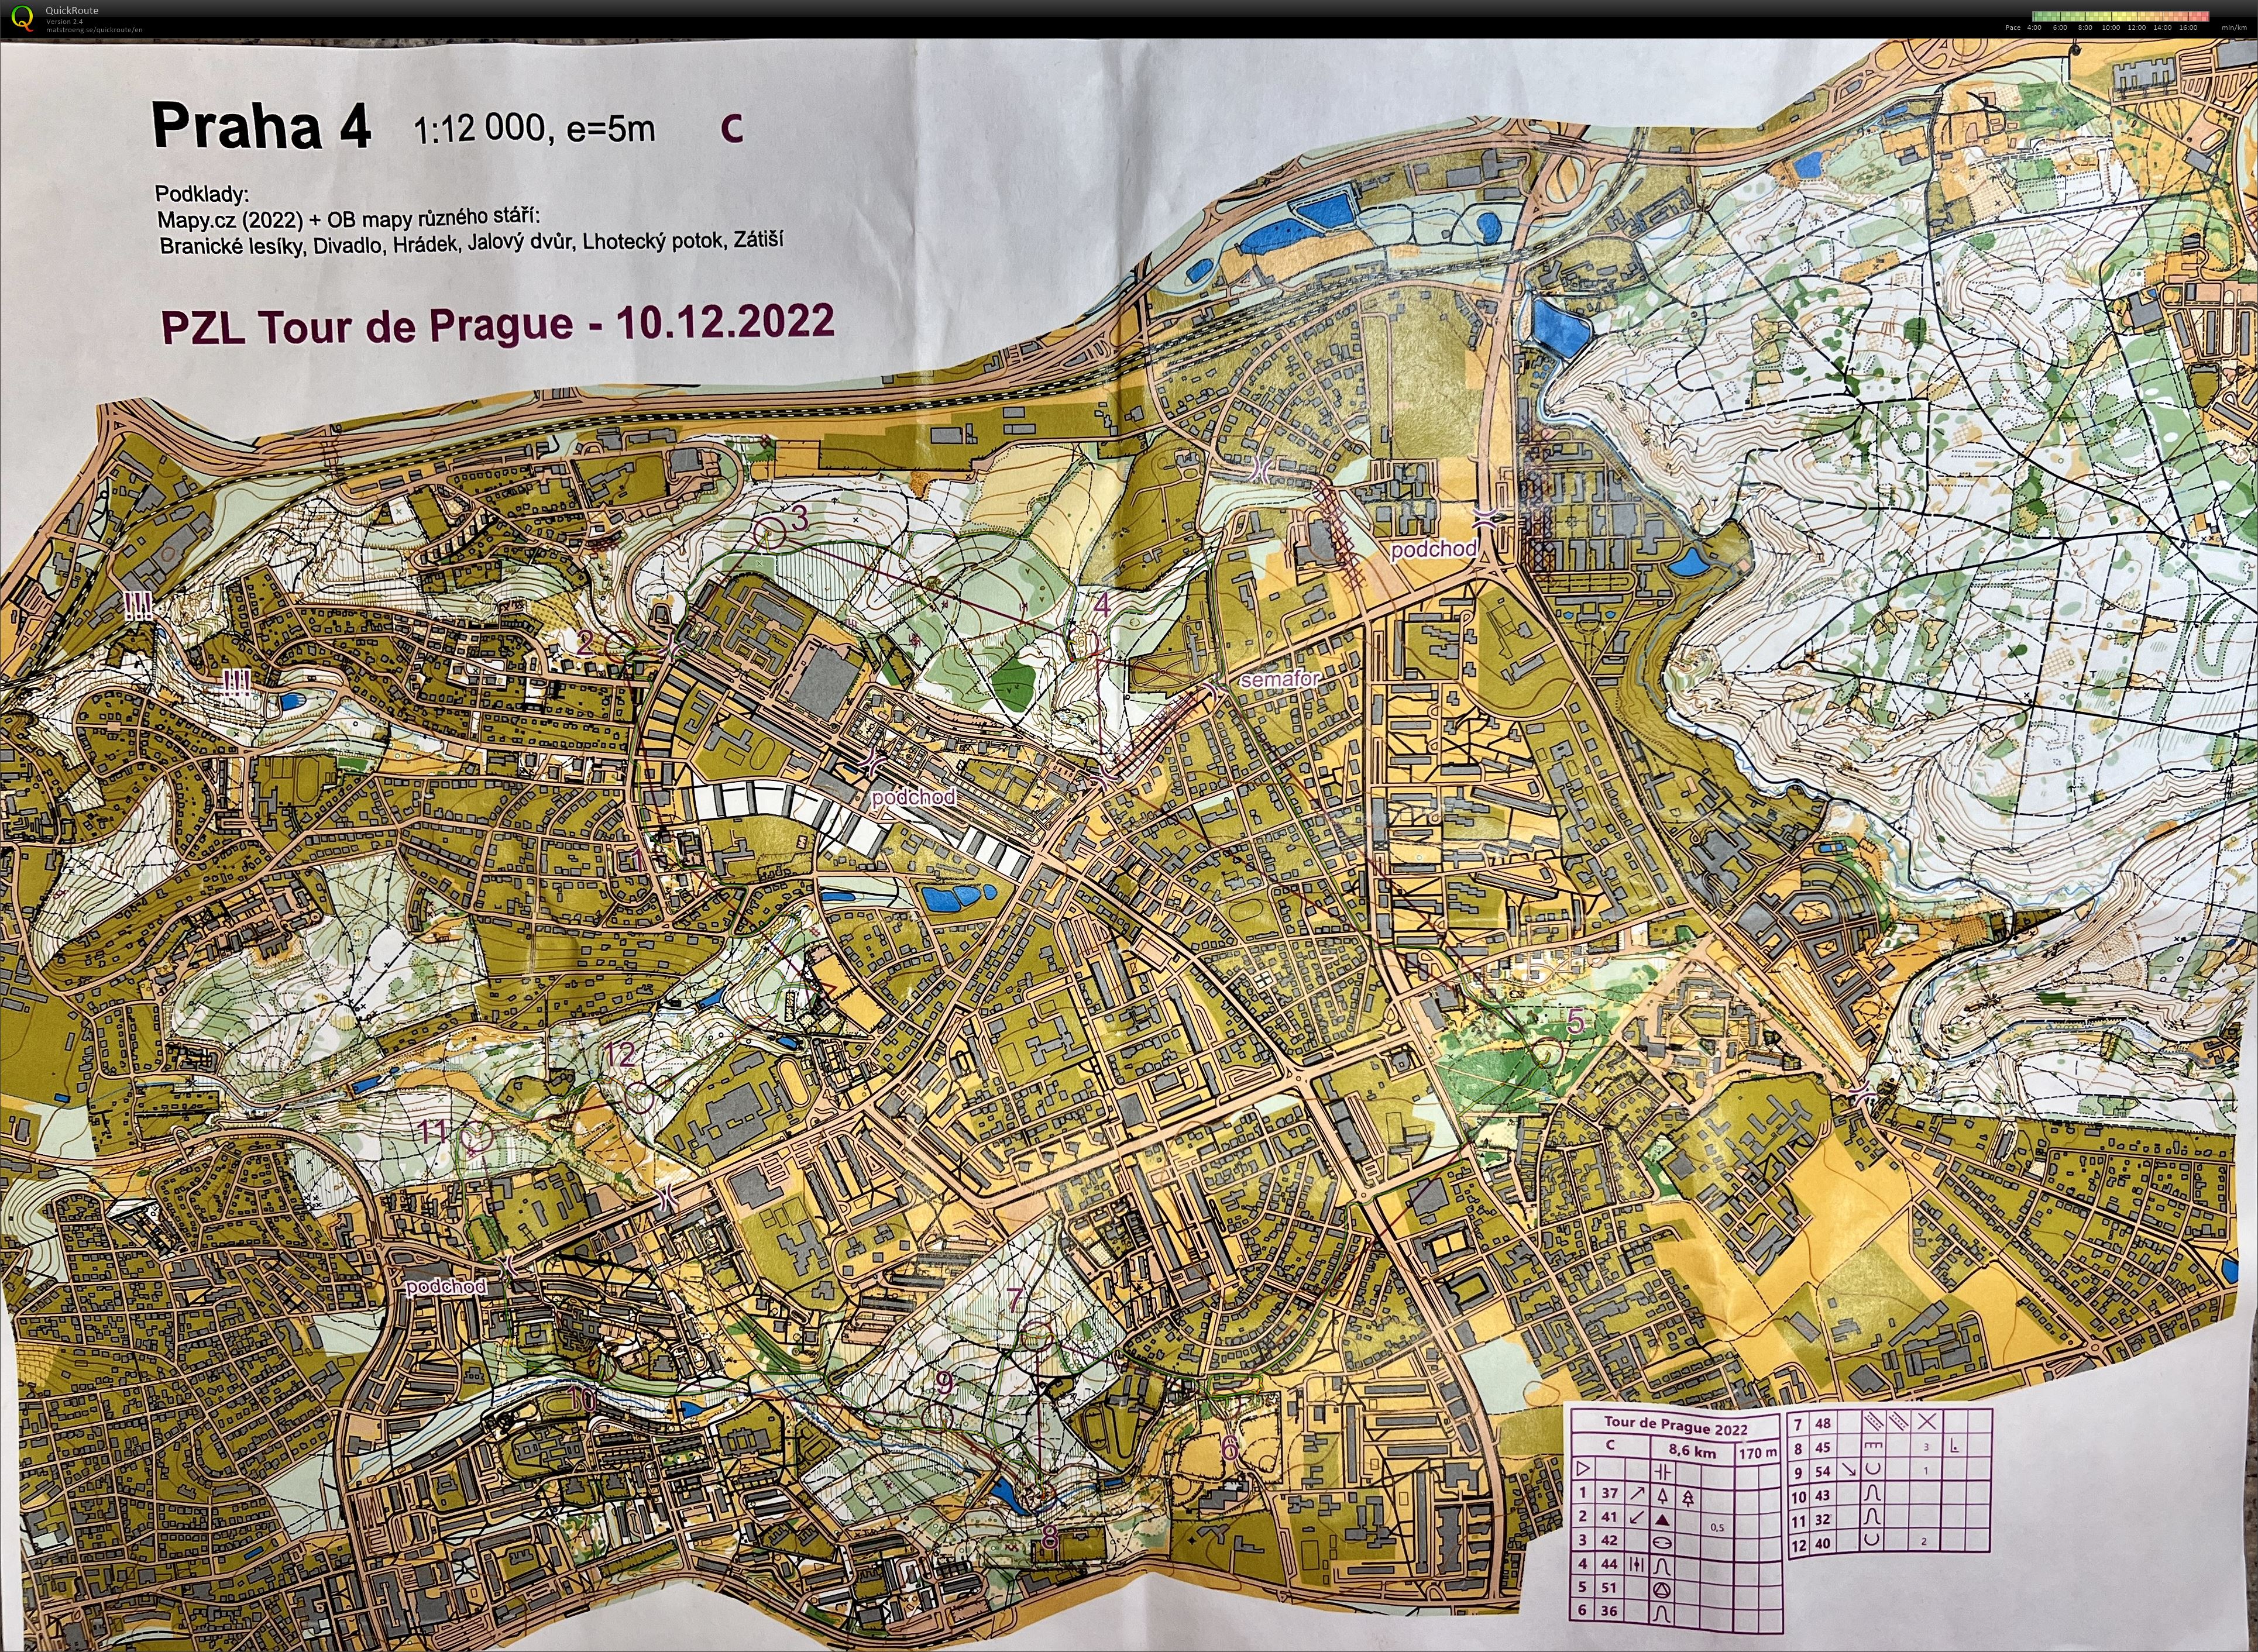 PZL Tour de Prague (10.12.2022)